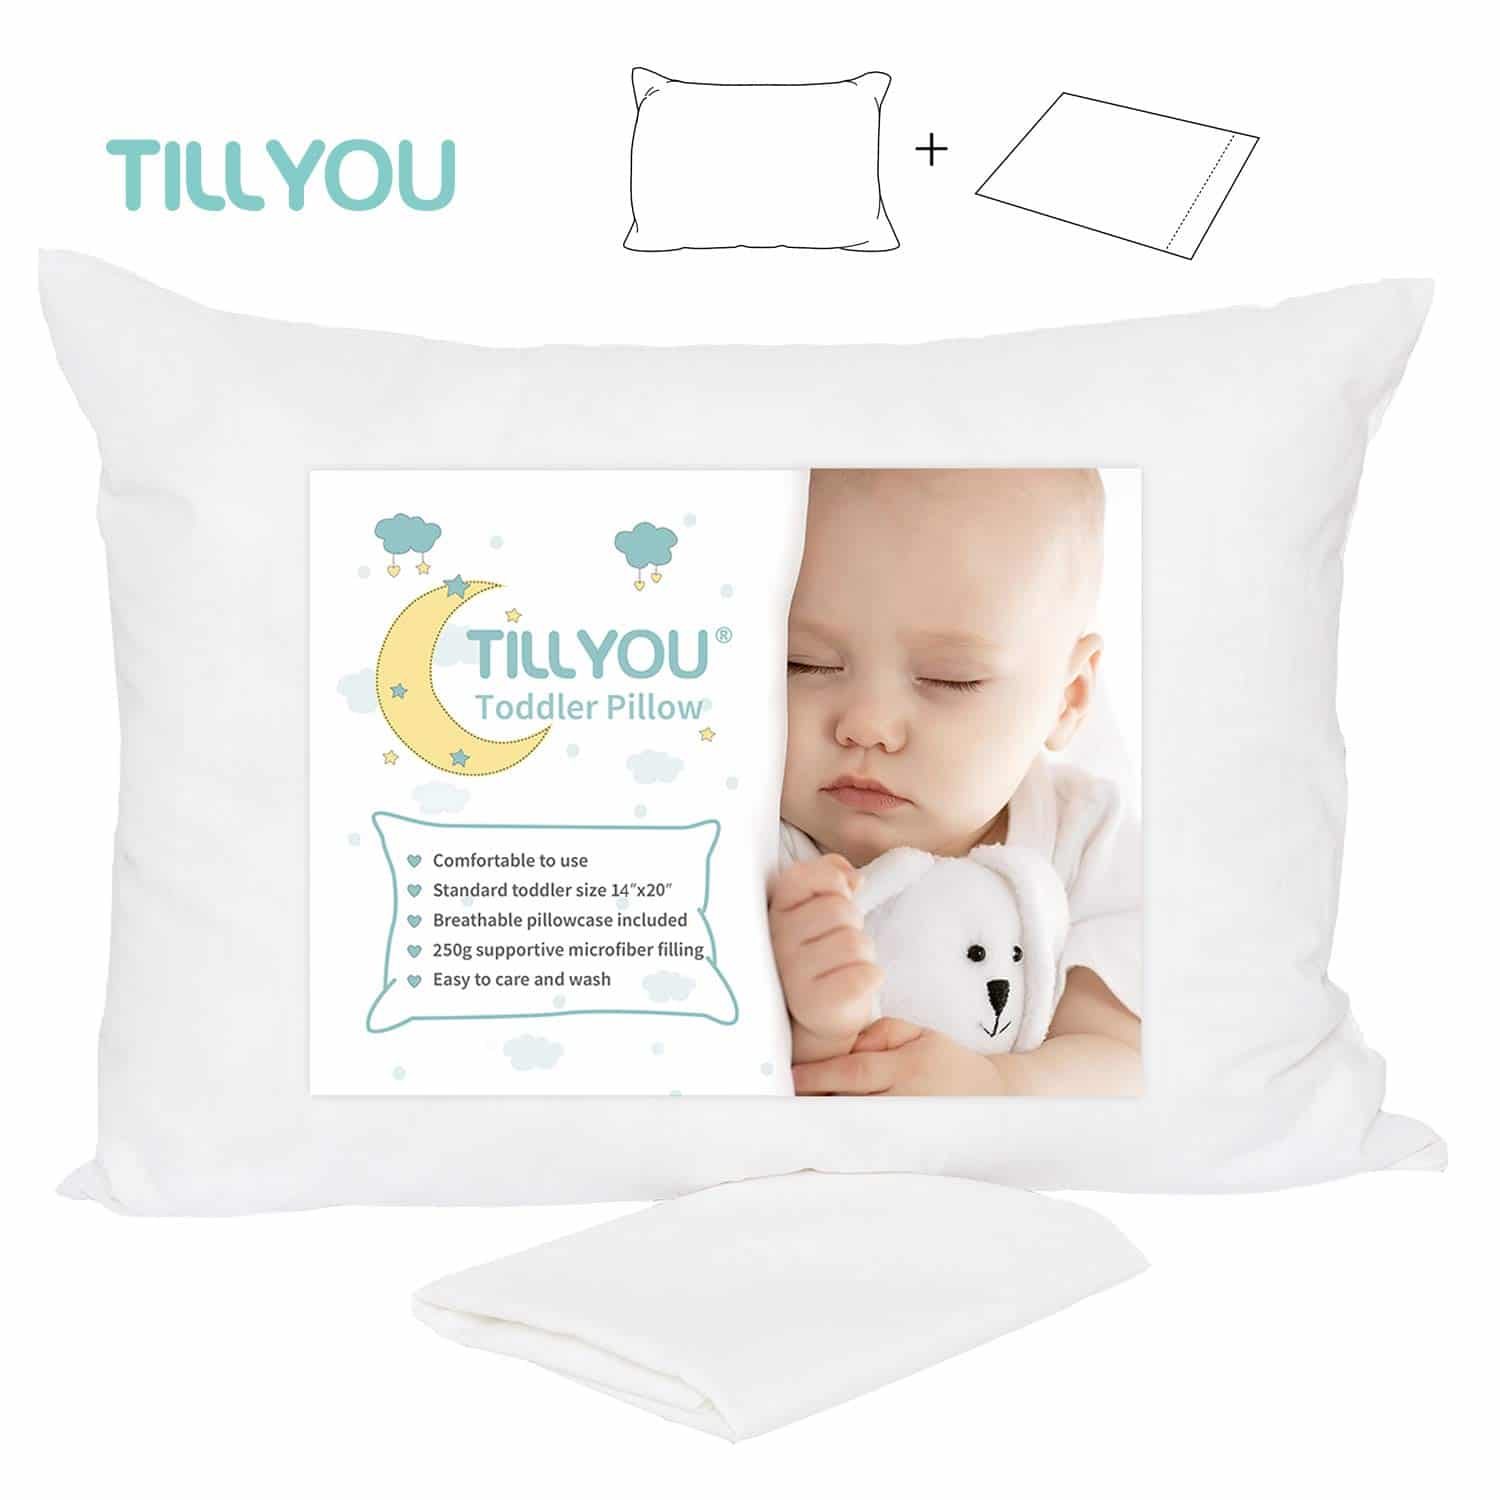 TILLYOU Toddler Pillow with Pillowcase